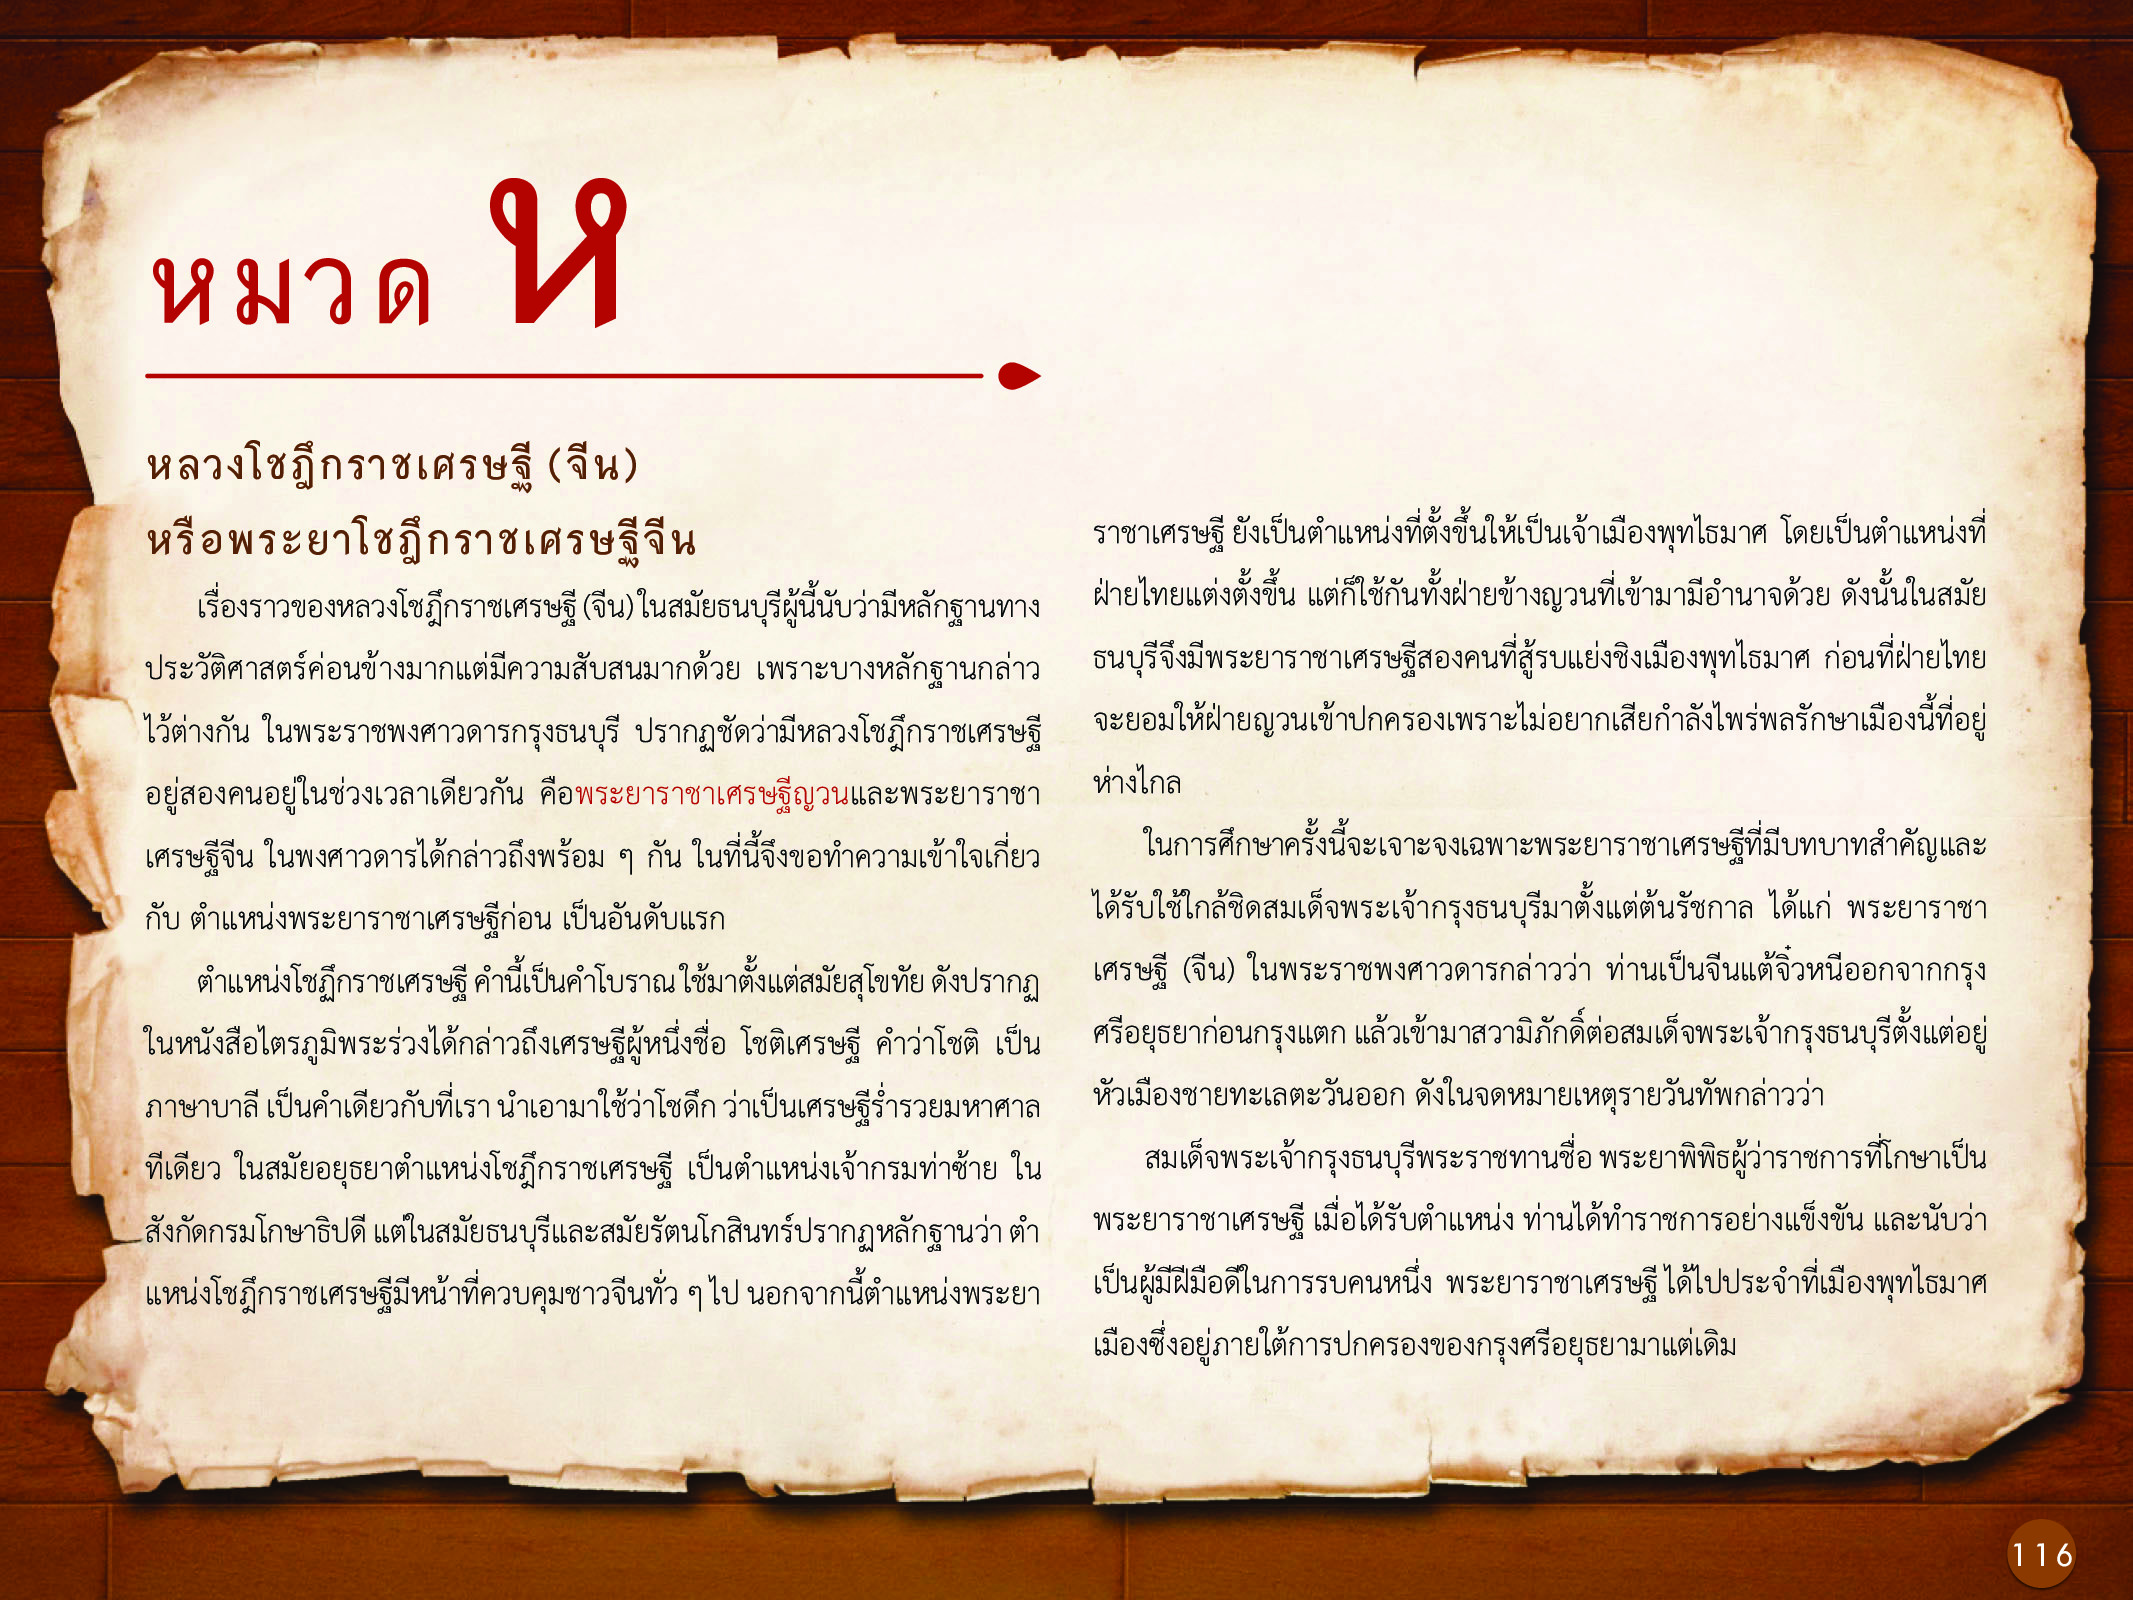 ประวัติศาสตร์กรุงธนบุรี ./images/history_dhonburi/116.jpg